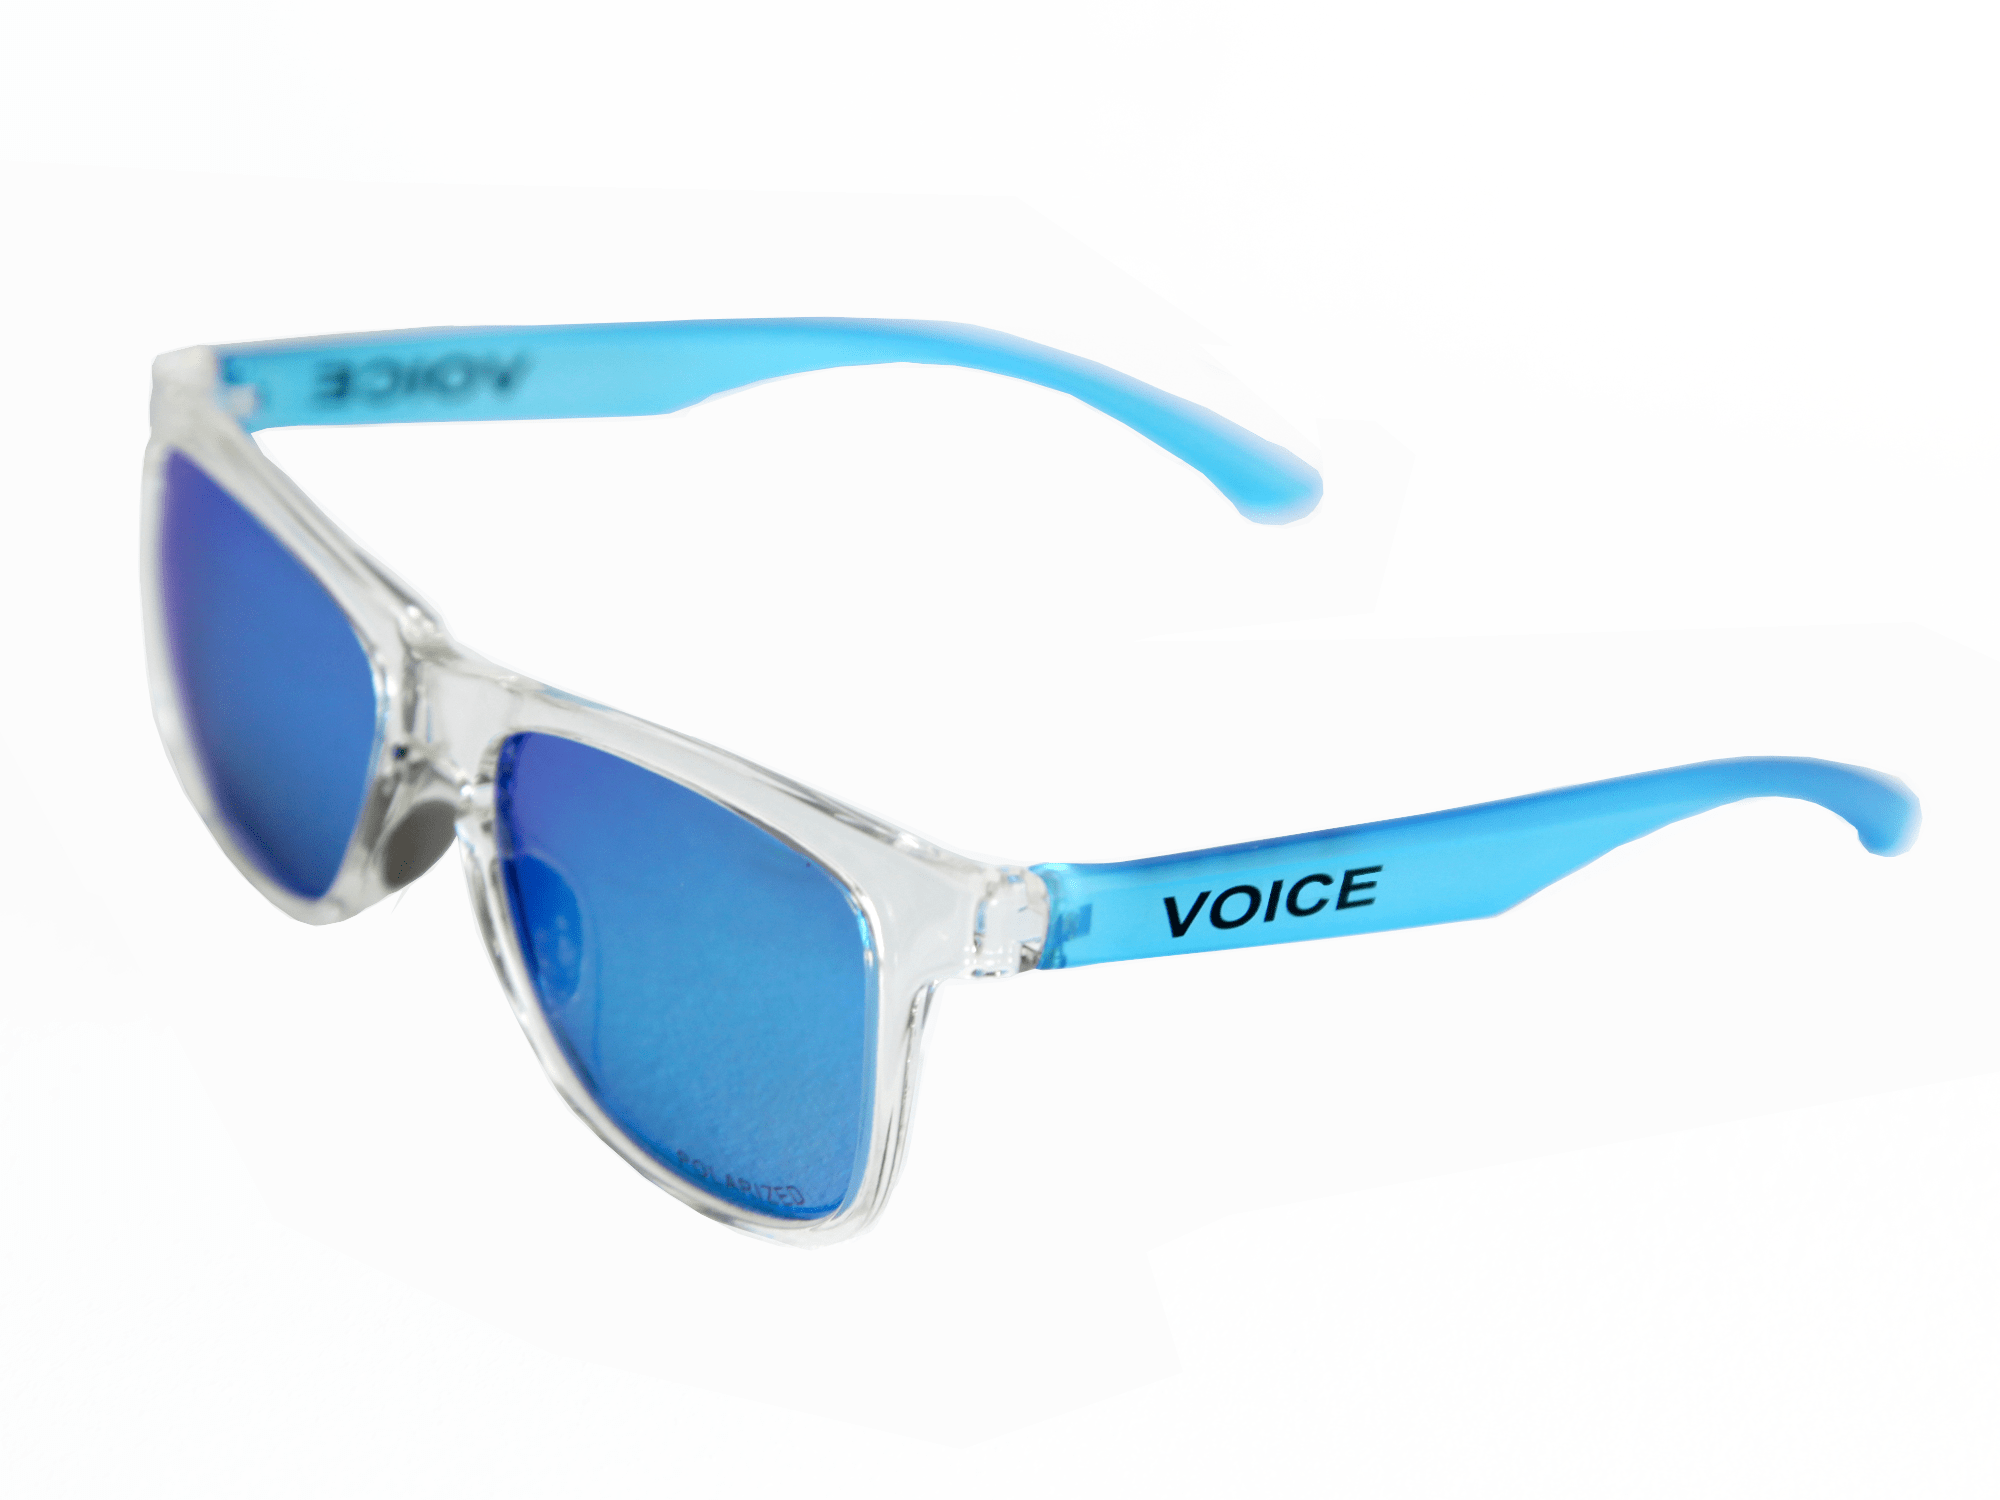 Gafas casual polarizadas VOICE Classic Blue transparentes